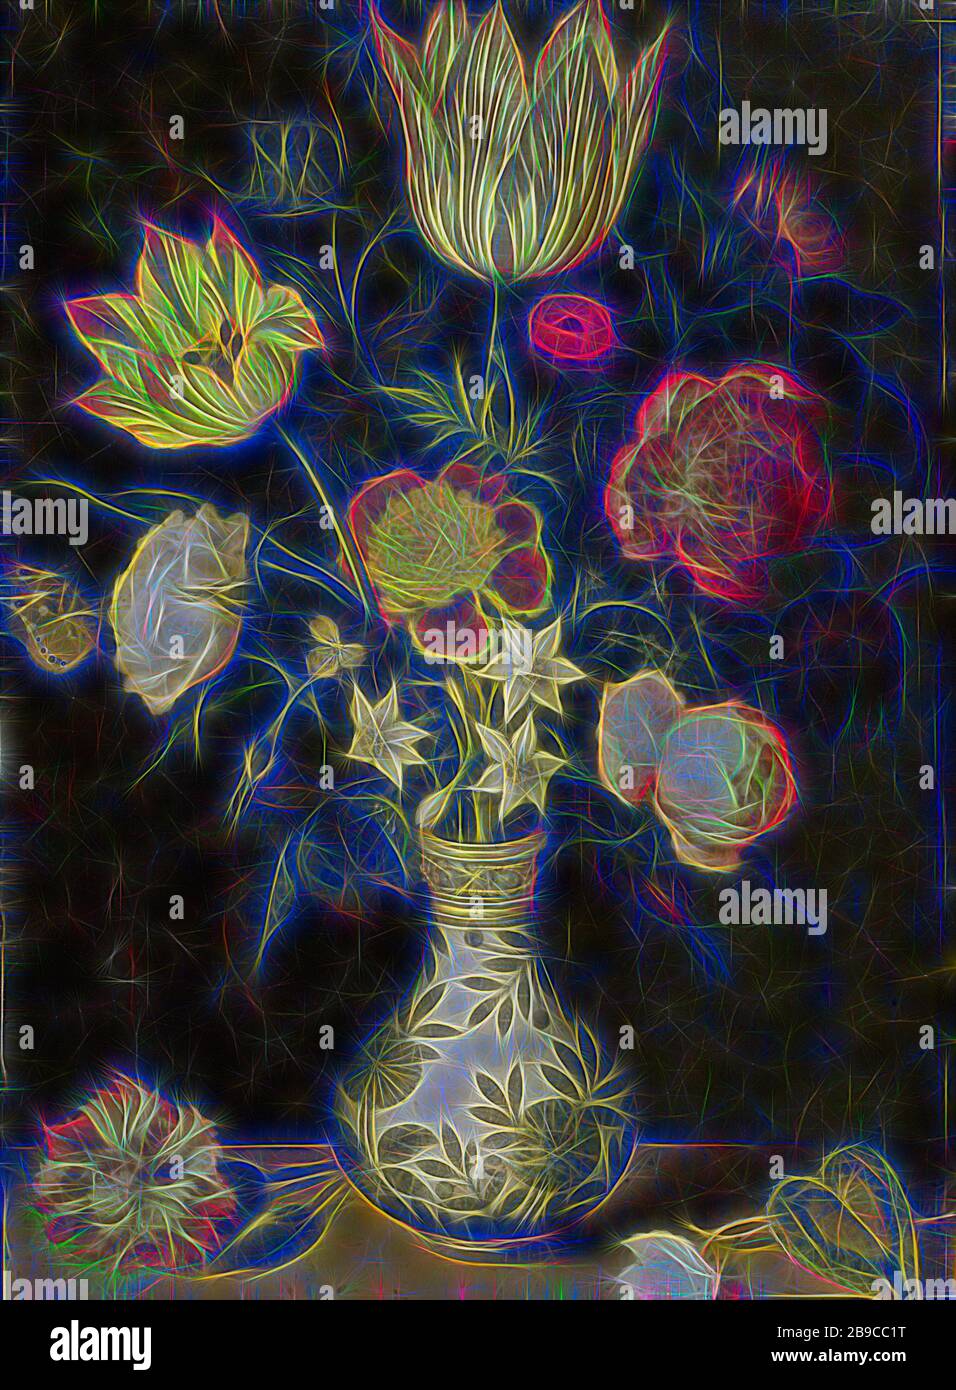 Still Life with Flowers in a WAN Li vase, encore vie avec des fleurs dans un vase WAN Li. Bouquet avec tulipes, roses et jonquilles dans un vase. Sur le plinthe en pierre une carnation et un cyclamen, fleurs dans un vase, fleurs: Rose, fleurs: tulipe, fleurs: narcisse, fleurs: carnation, récipient ou céramique: Pot, pichet, pot, vase, Ambrosius Bosschaert, 1619, cuivre (métal), peinture à l'huile (peinture), soutien: h 31 cm × l 22,5 cm, repensé par Gibon, design de glanissement chaleureux et joyeux de la luminosité et des rayons de lumière radiance. L'art classique réinventé avec une touche moderne. La photographie inspirée du futurisme, embrassant la dynamique e Banque D'Images